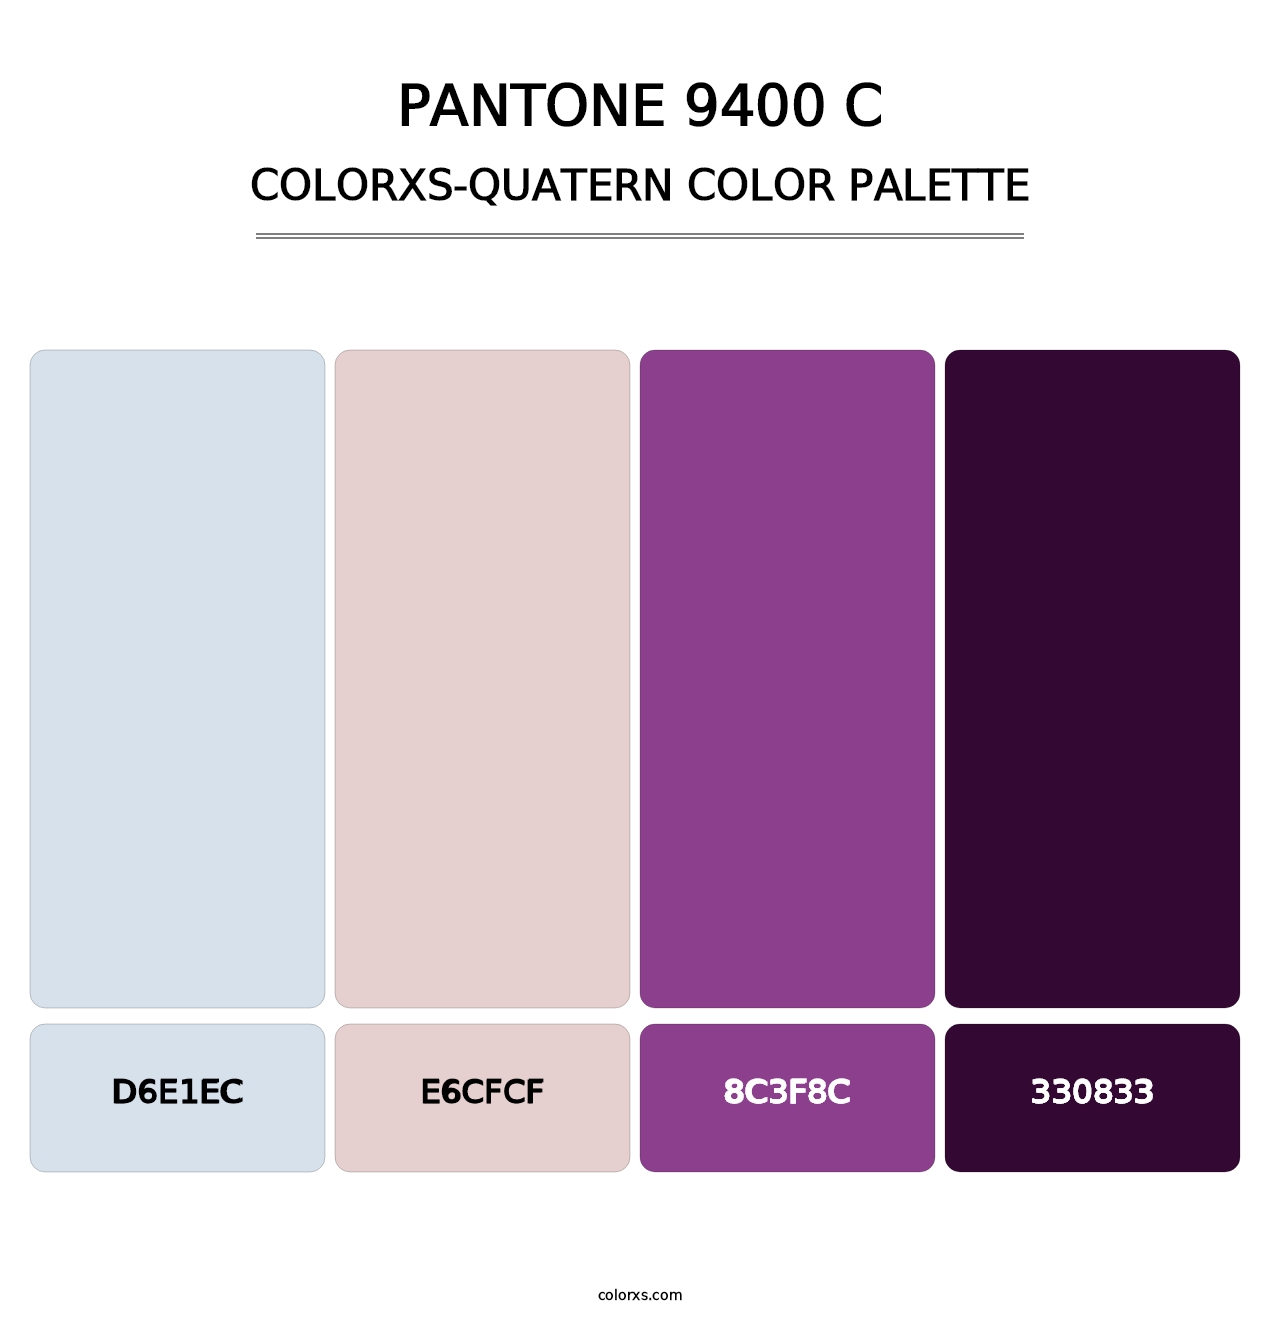 PANTONE 9400 C - Colorxs Quatern Palette